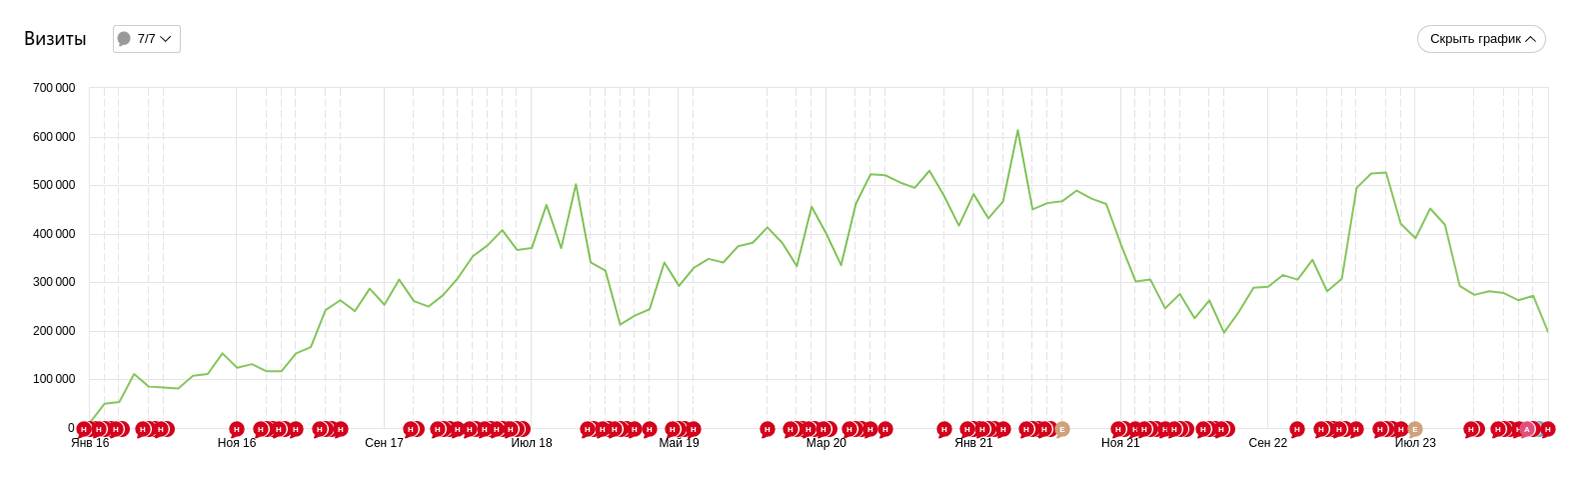 График посещаемости сайта с января 2016 года. Больше всего визитов на ресурс было в 2021 году — 600 тысяч за месяц